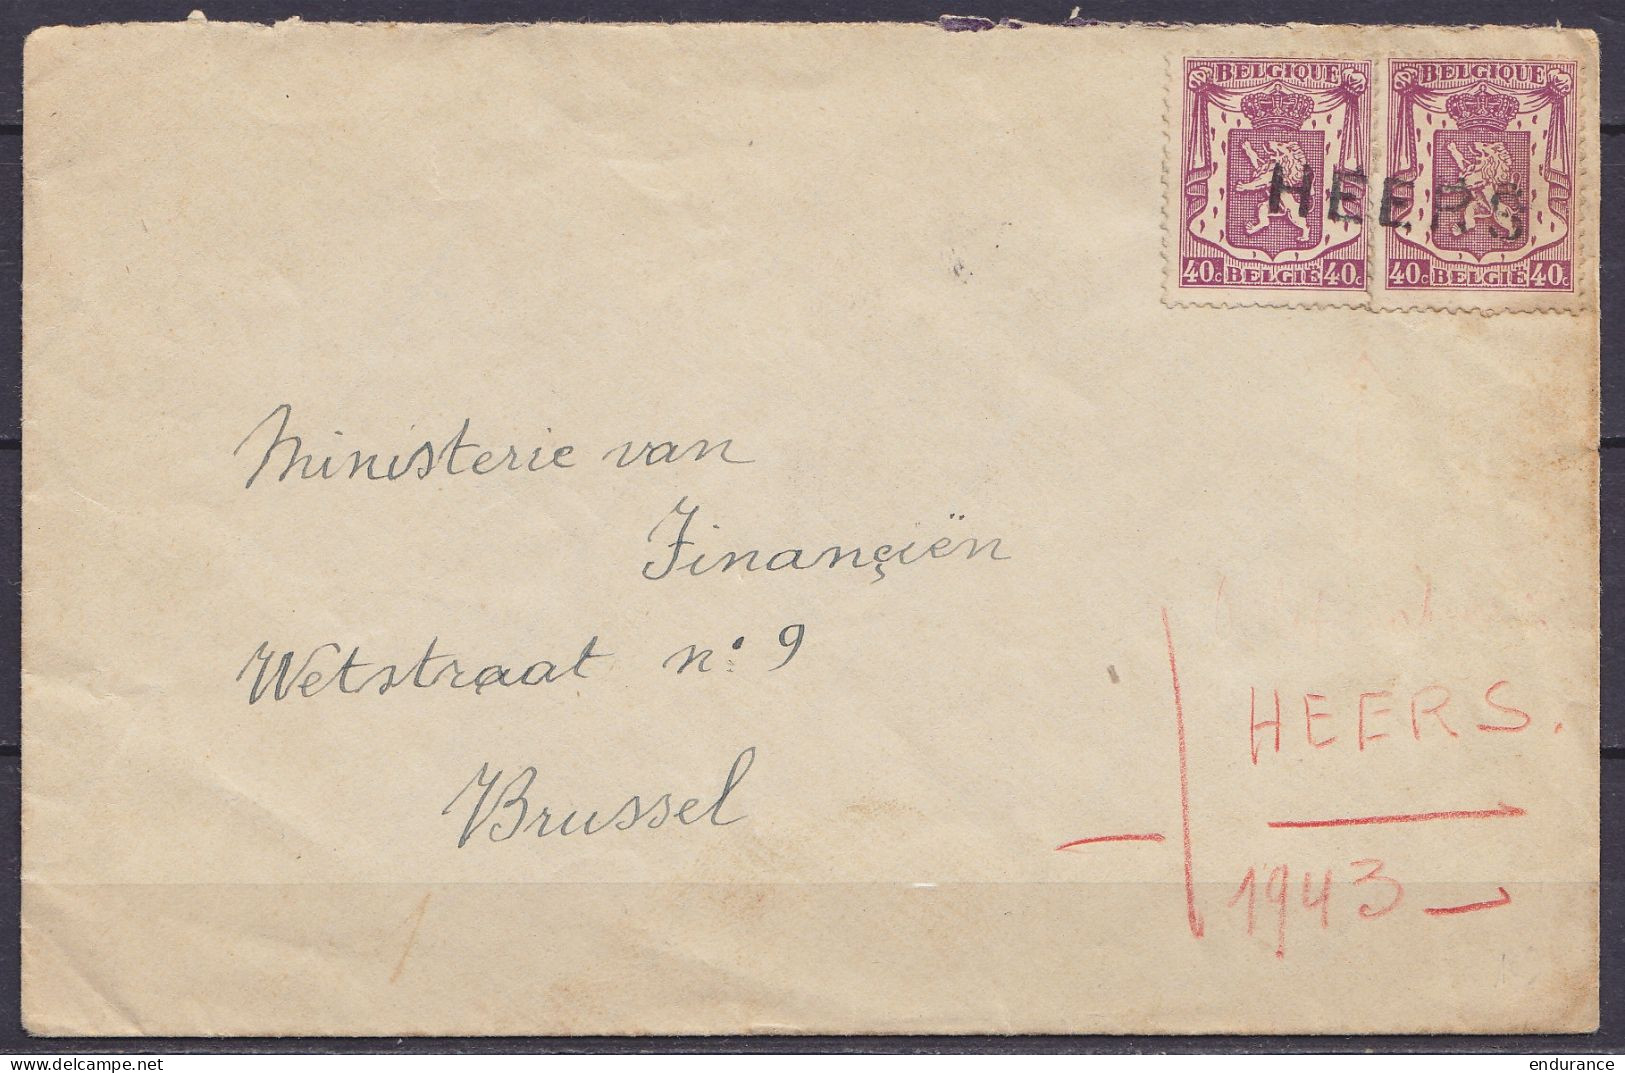 L. Affr.N°479x2 Oblit. Fortune Griffe "HEERS" 1943 Pour BRUSSEL - 1935-1949 Petit Sceau De L'Etat